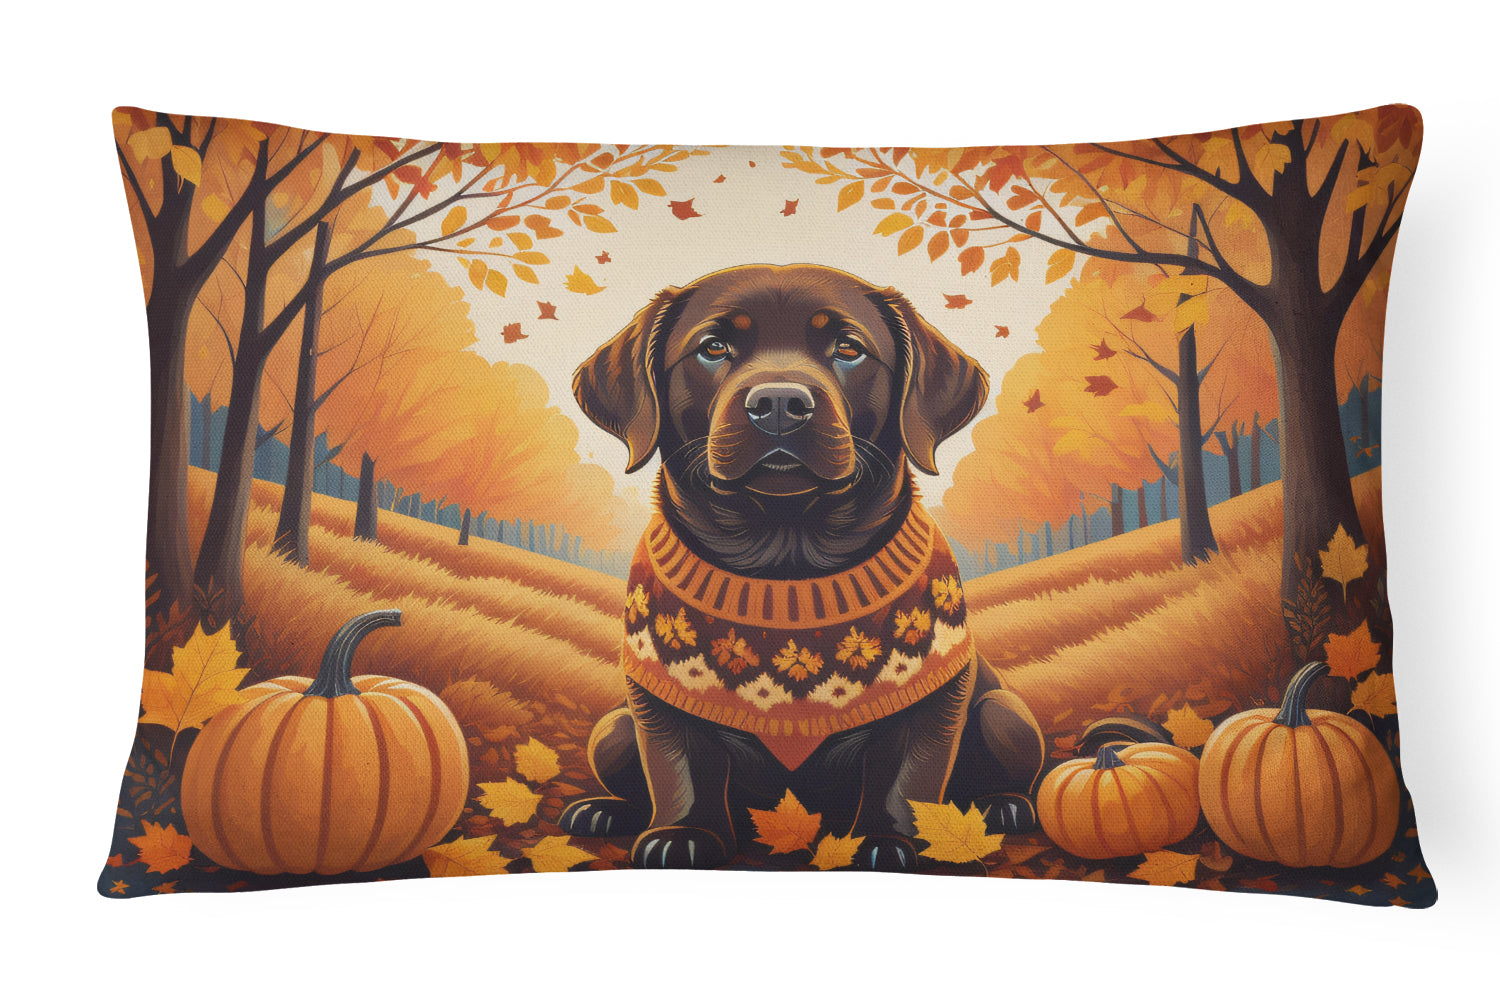 Buy this Chocolate Labrador Retriever Fall Fabric Decorative Pillow